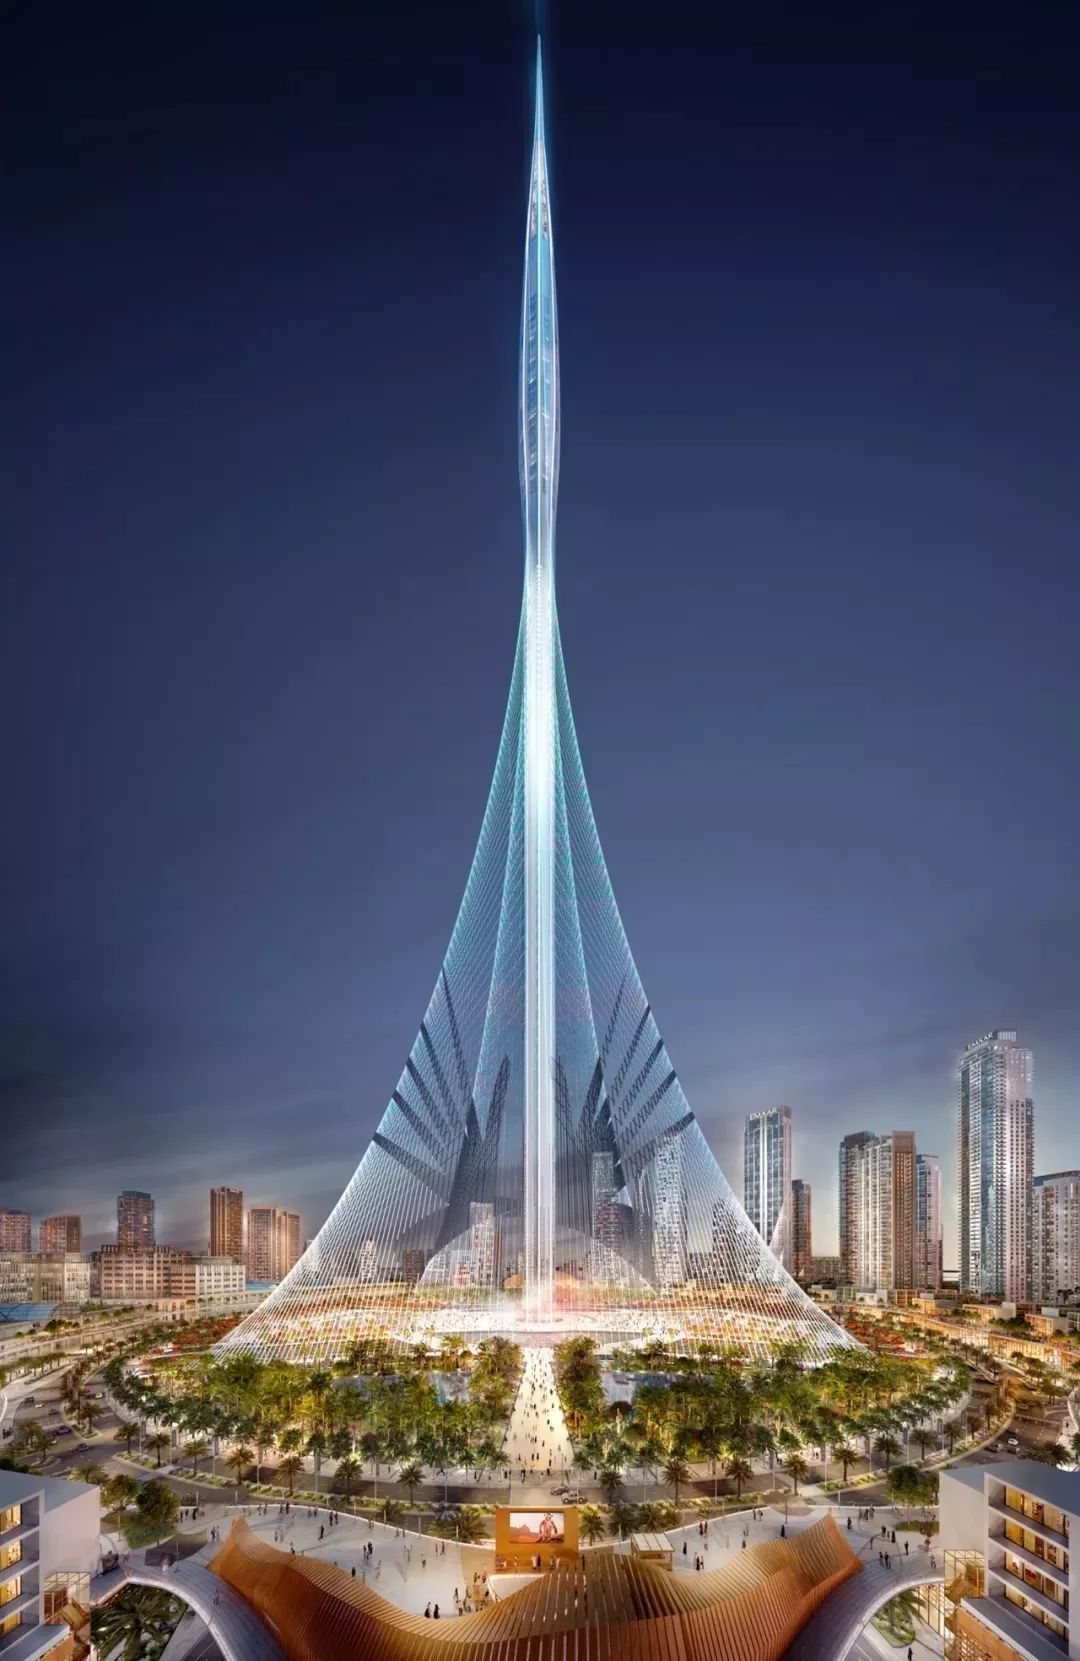 迪拜斥资10亿美元,再造世界最高塔